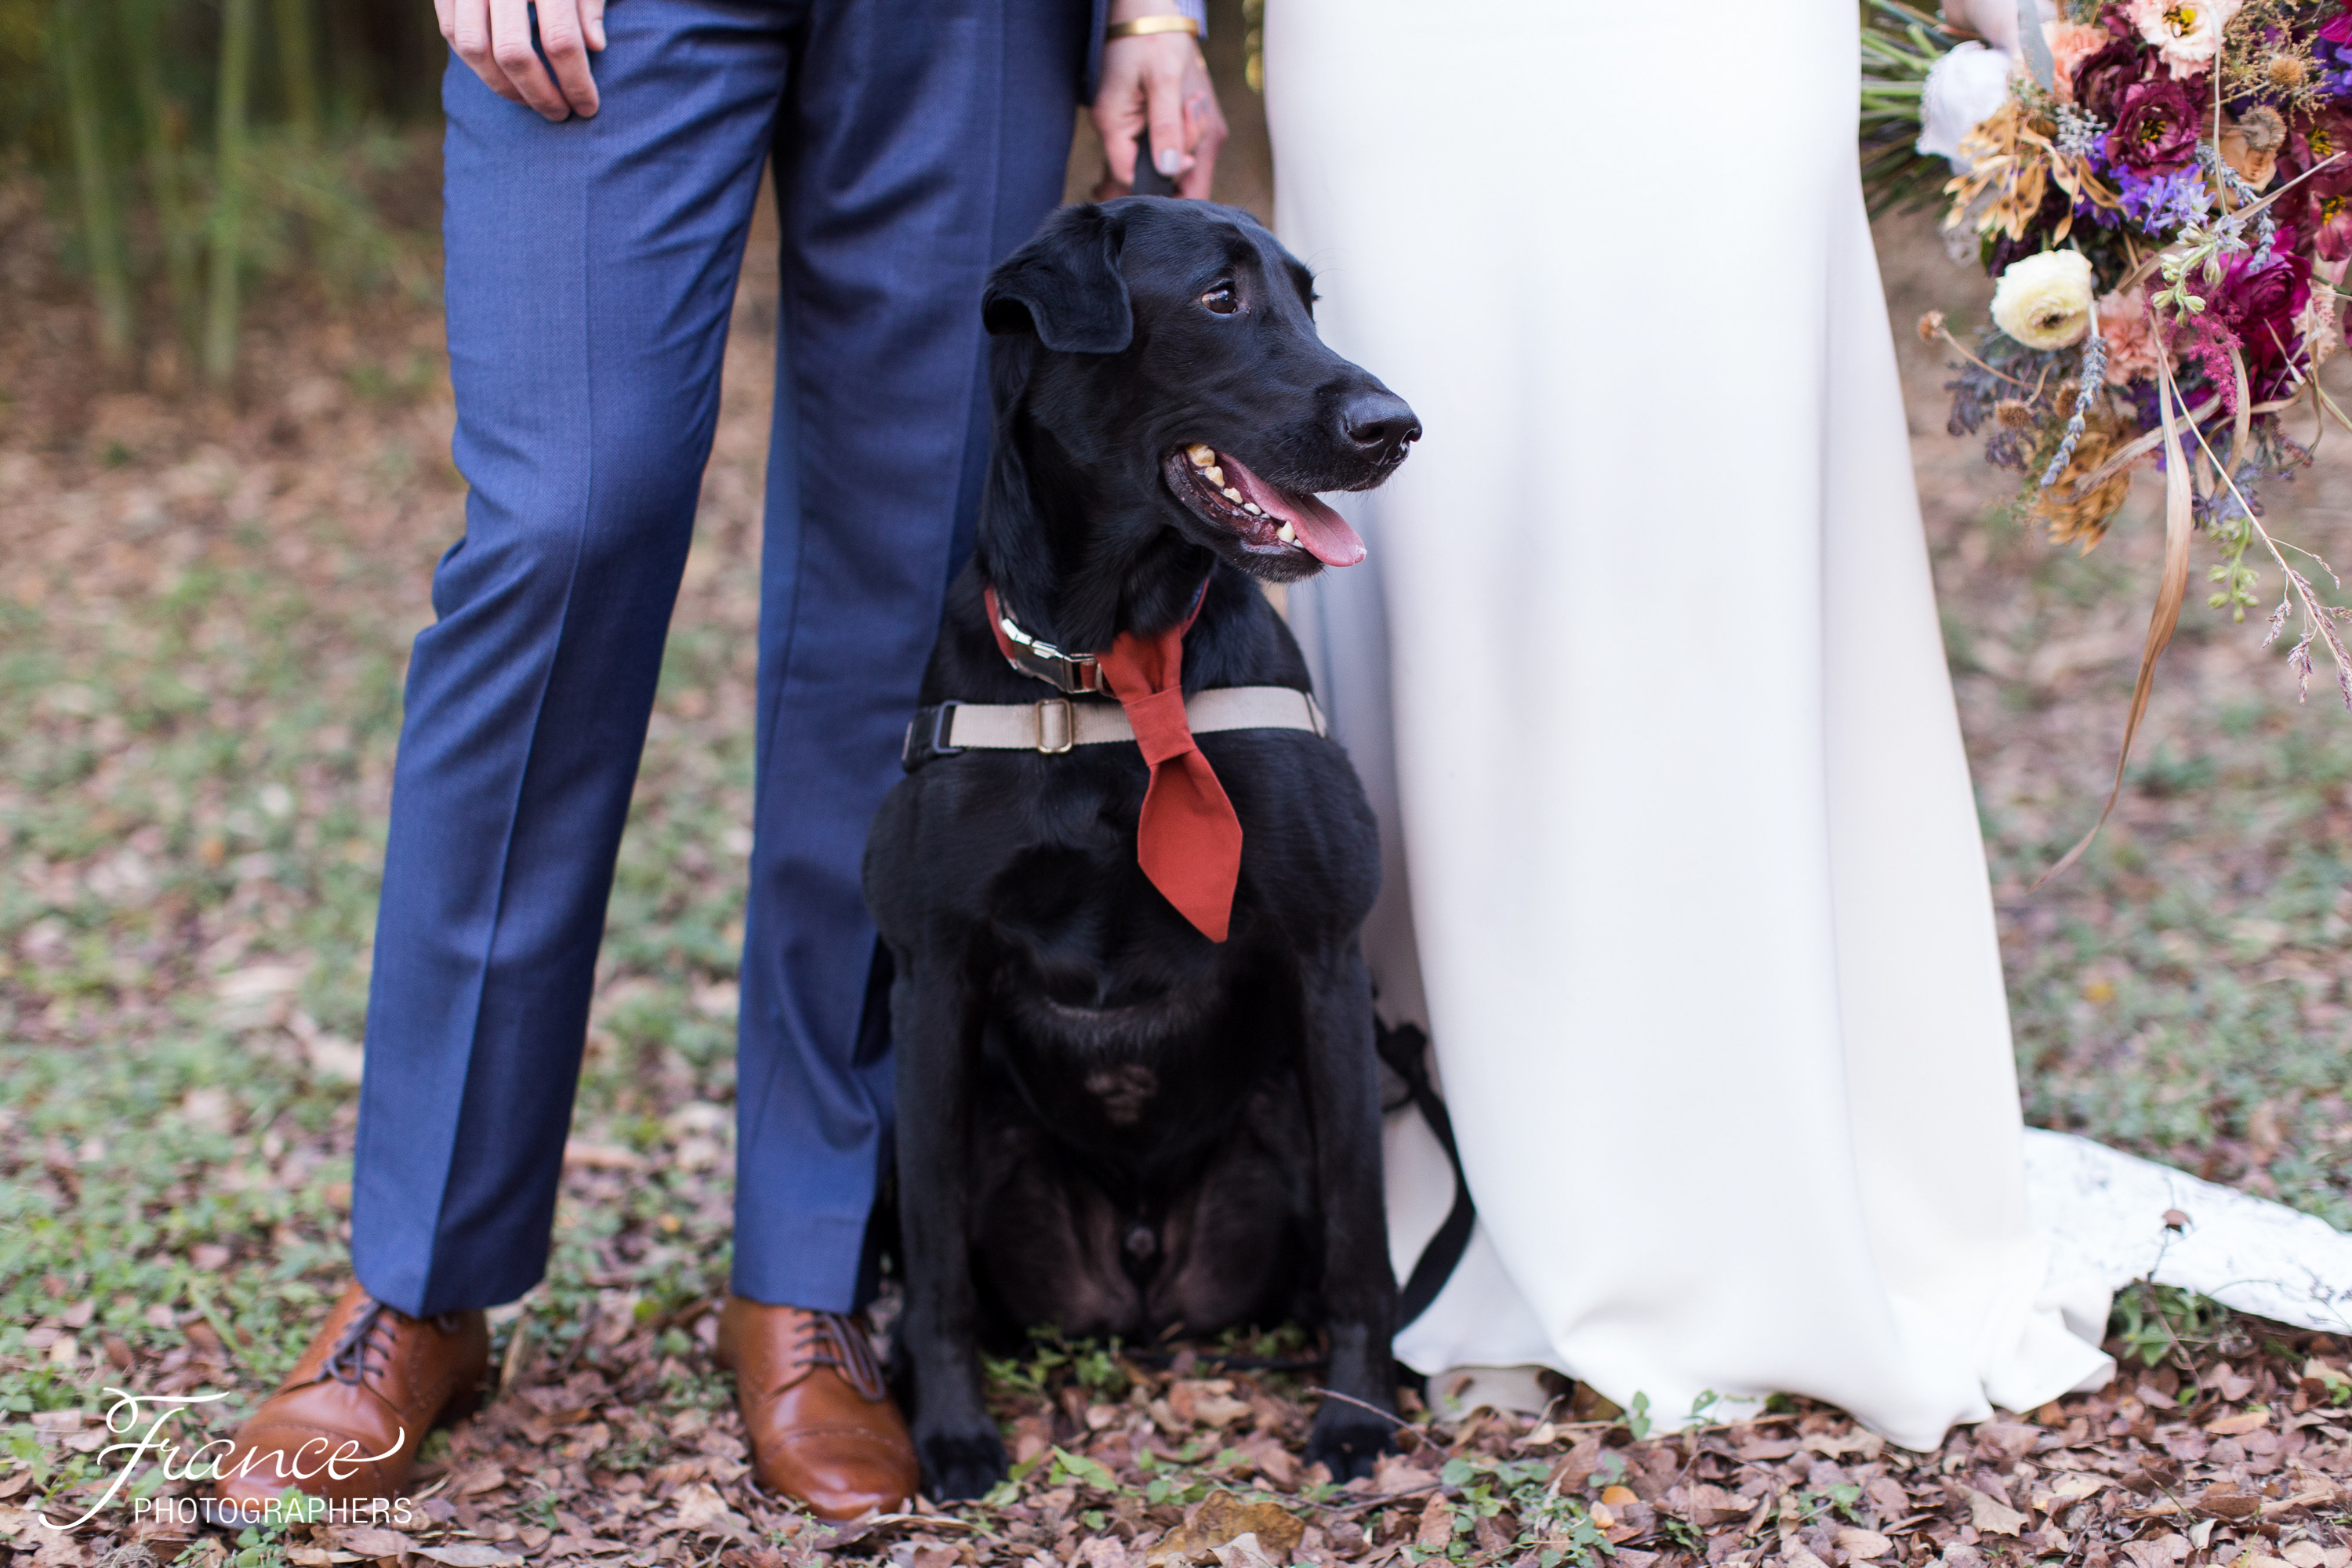 Dogs in Austin Weddings